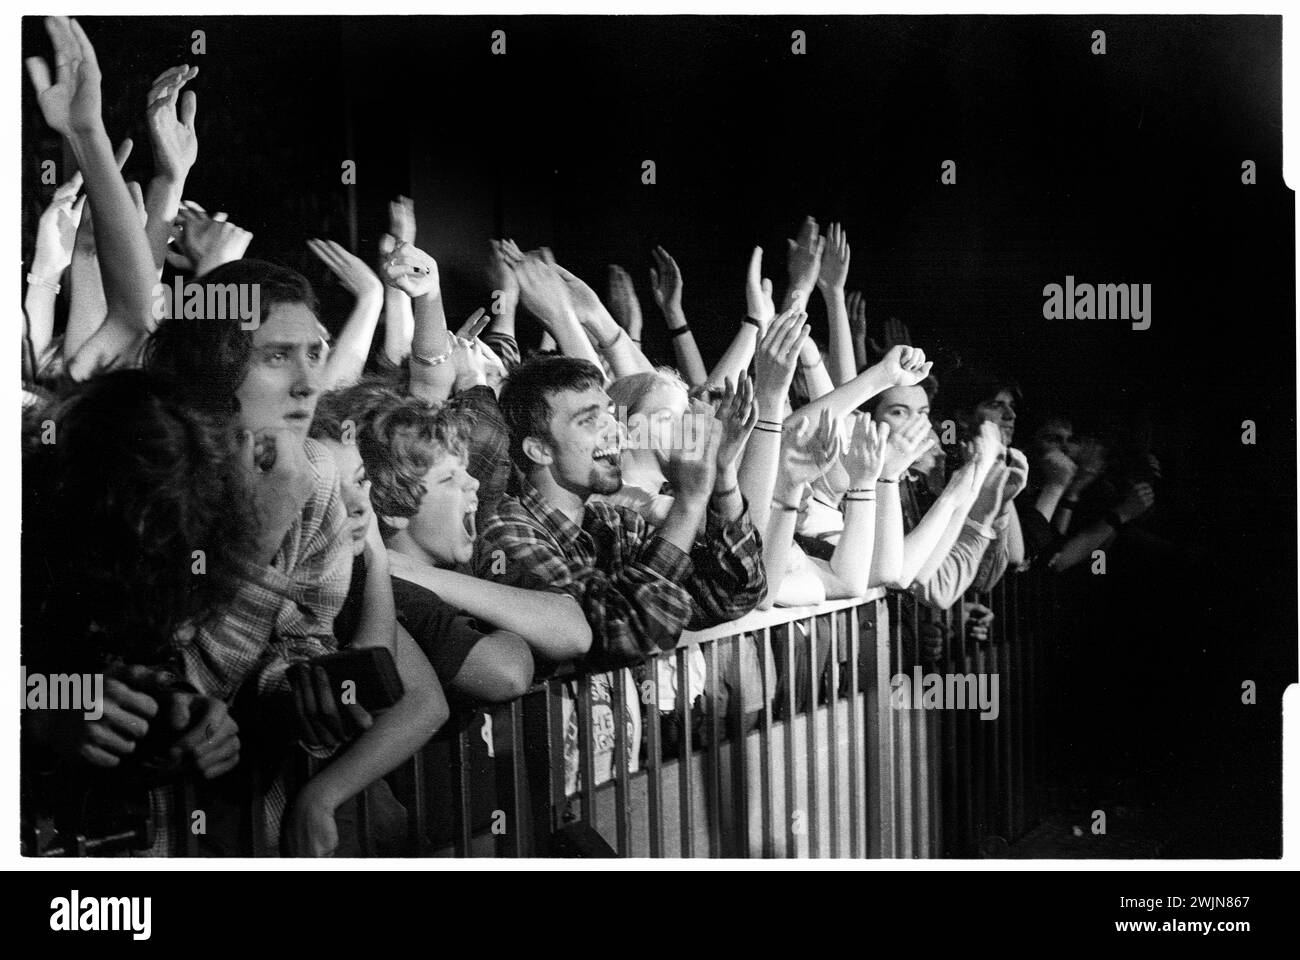 BRITPOP FANS, ANSON ROOMS, Bristol, 1996 : Britpop fans up to the Barrier at the Anson Rooms at Bristol University à Bristol, Angleterre, Royaume-Uni le 20 janvier 1996. Ils assistent au NME Bratbus Tour 1996 qui met en vedette les Cardigans, Bluetones, Fluffy et Heavy Stereo. Photo : Rob Watkins Banque D'Images